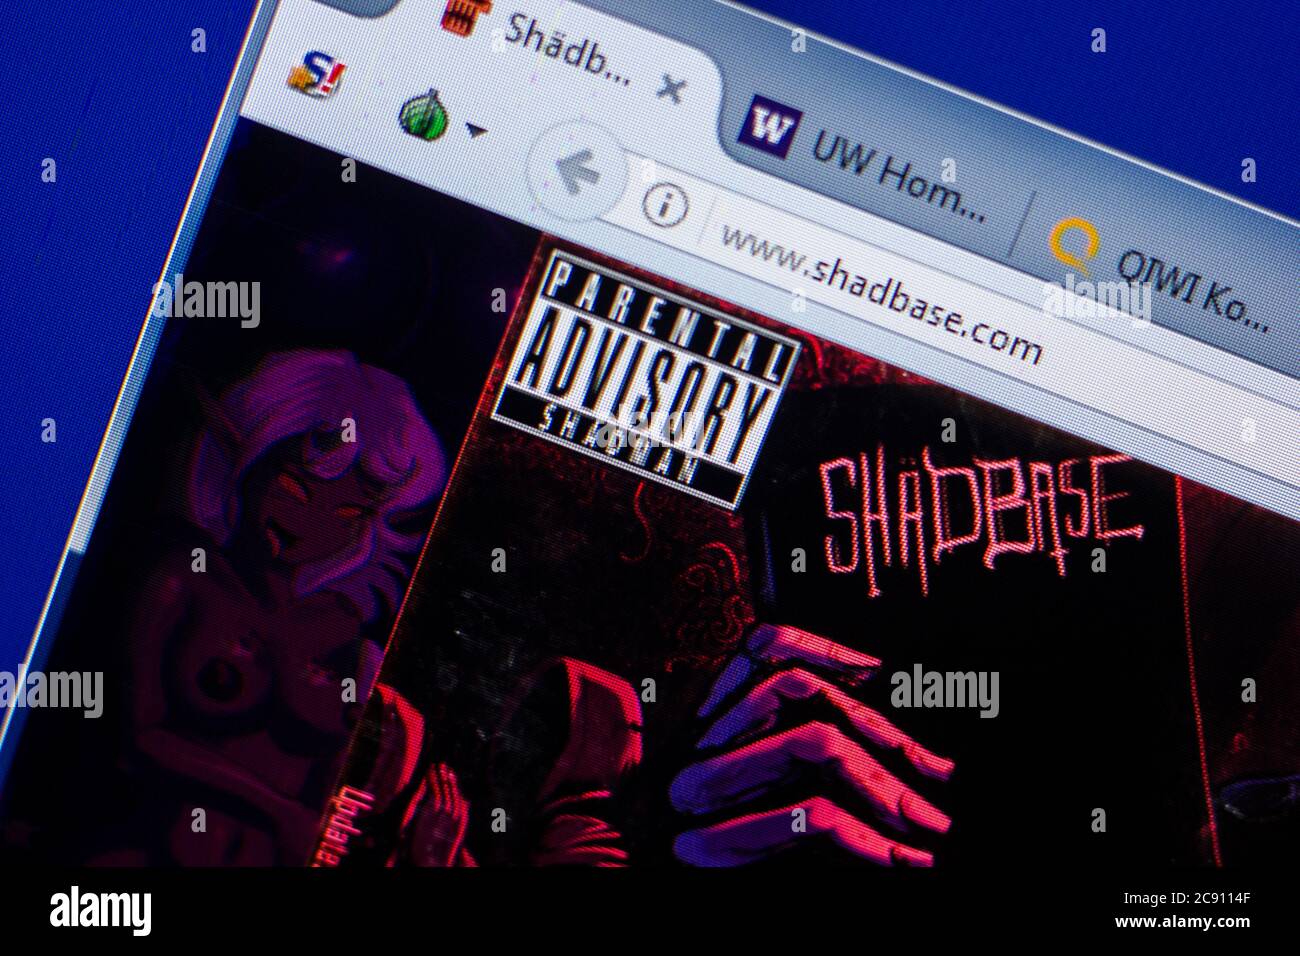 Shadebase website